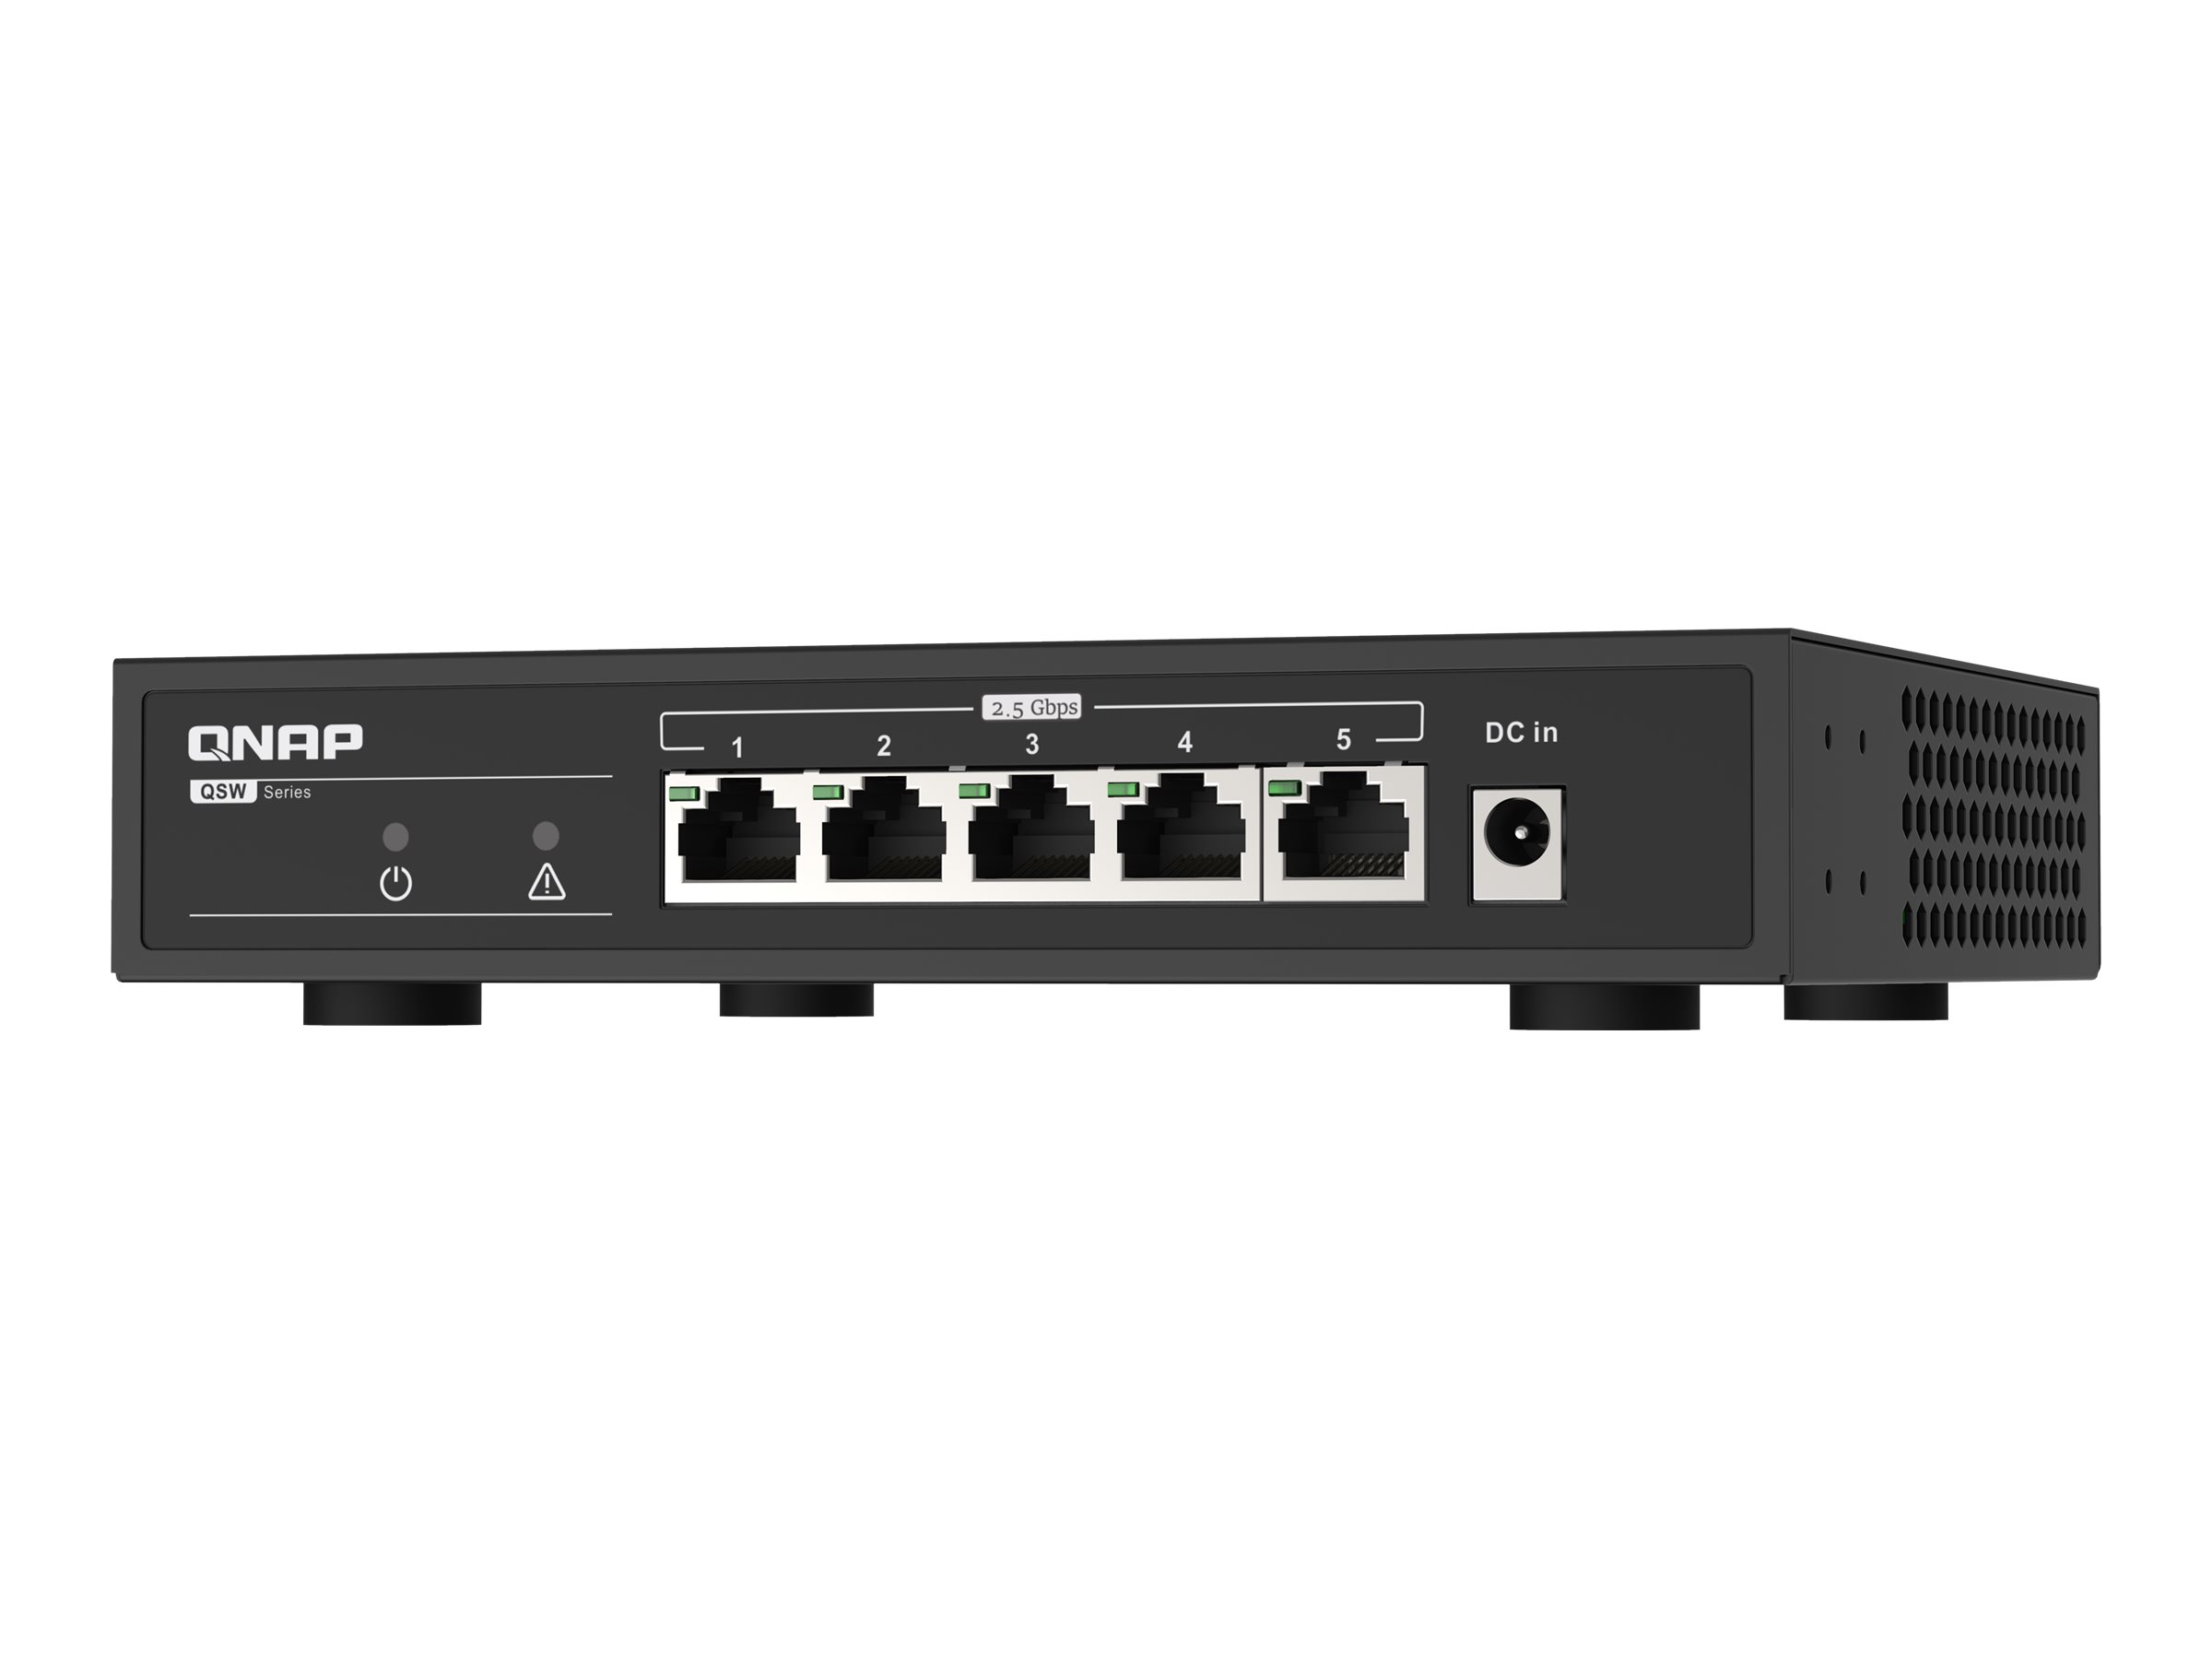 QNAP QSW-1105-5T - Switch - unmanaged - 5 x 10/100/1000/2.5G - Desktop